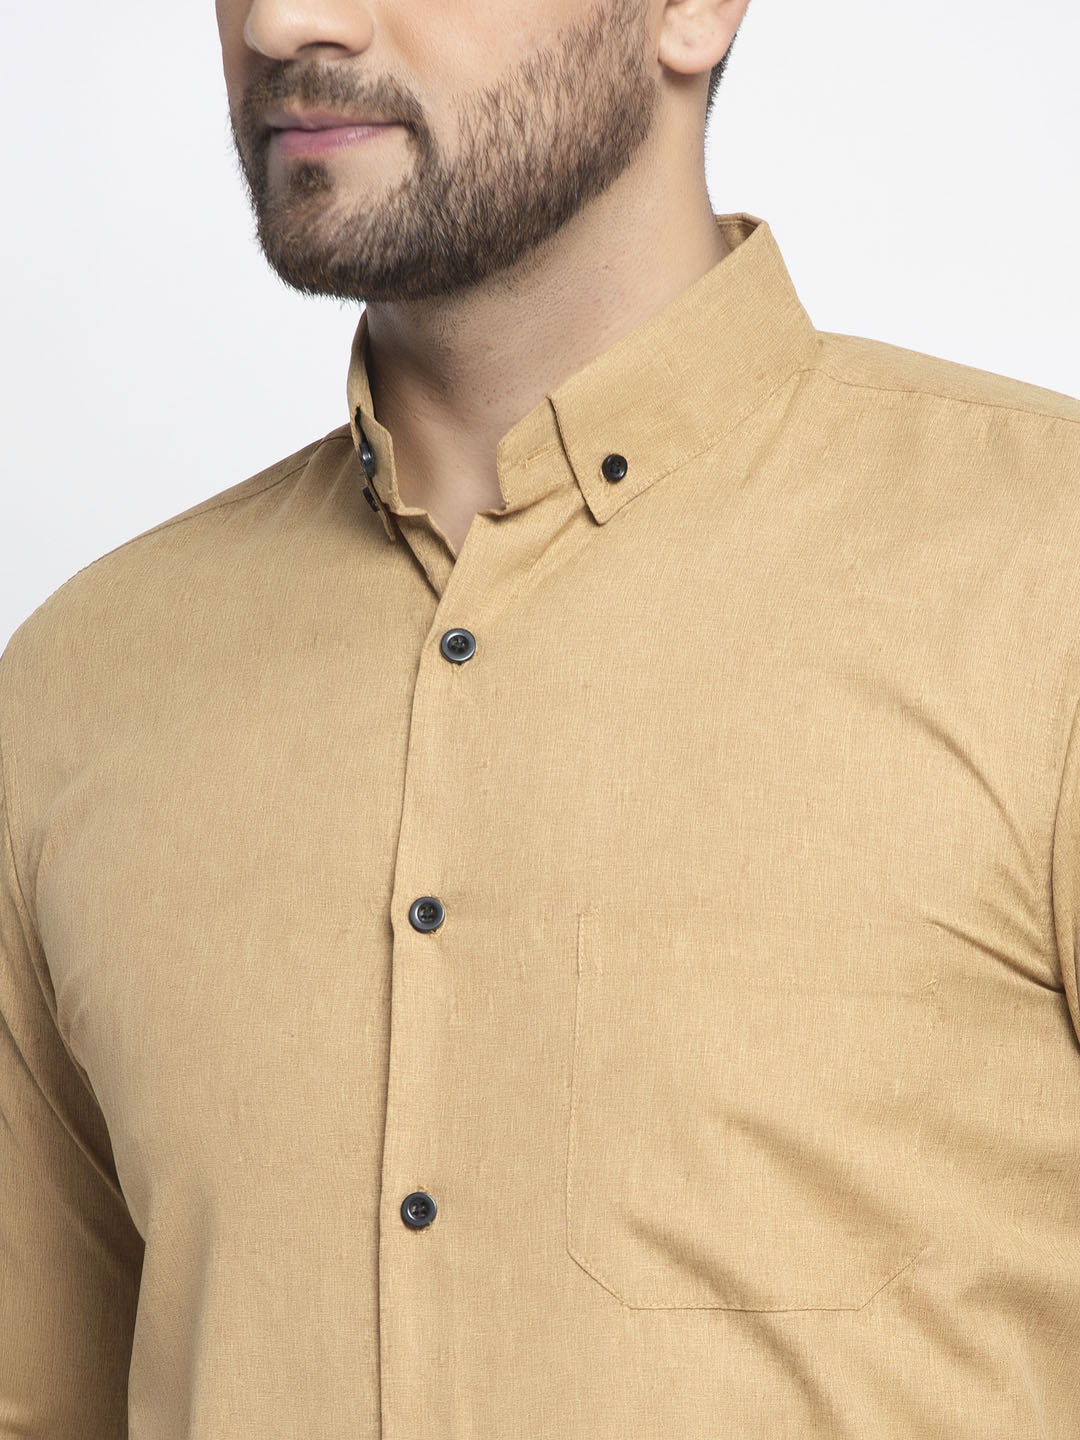 Jainish Beige Men's Cotton Solid Button Down Formal Shirts ( SF 734Beige ) - Distacart